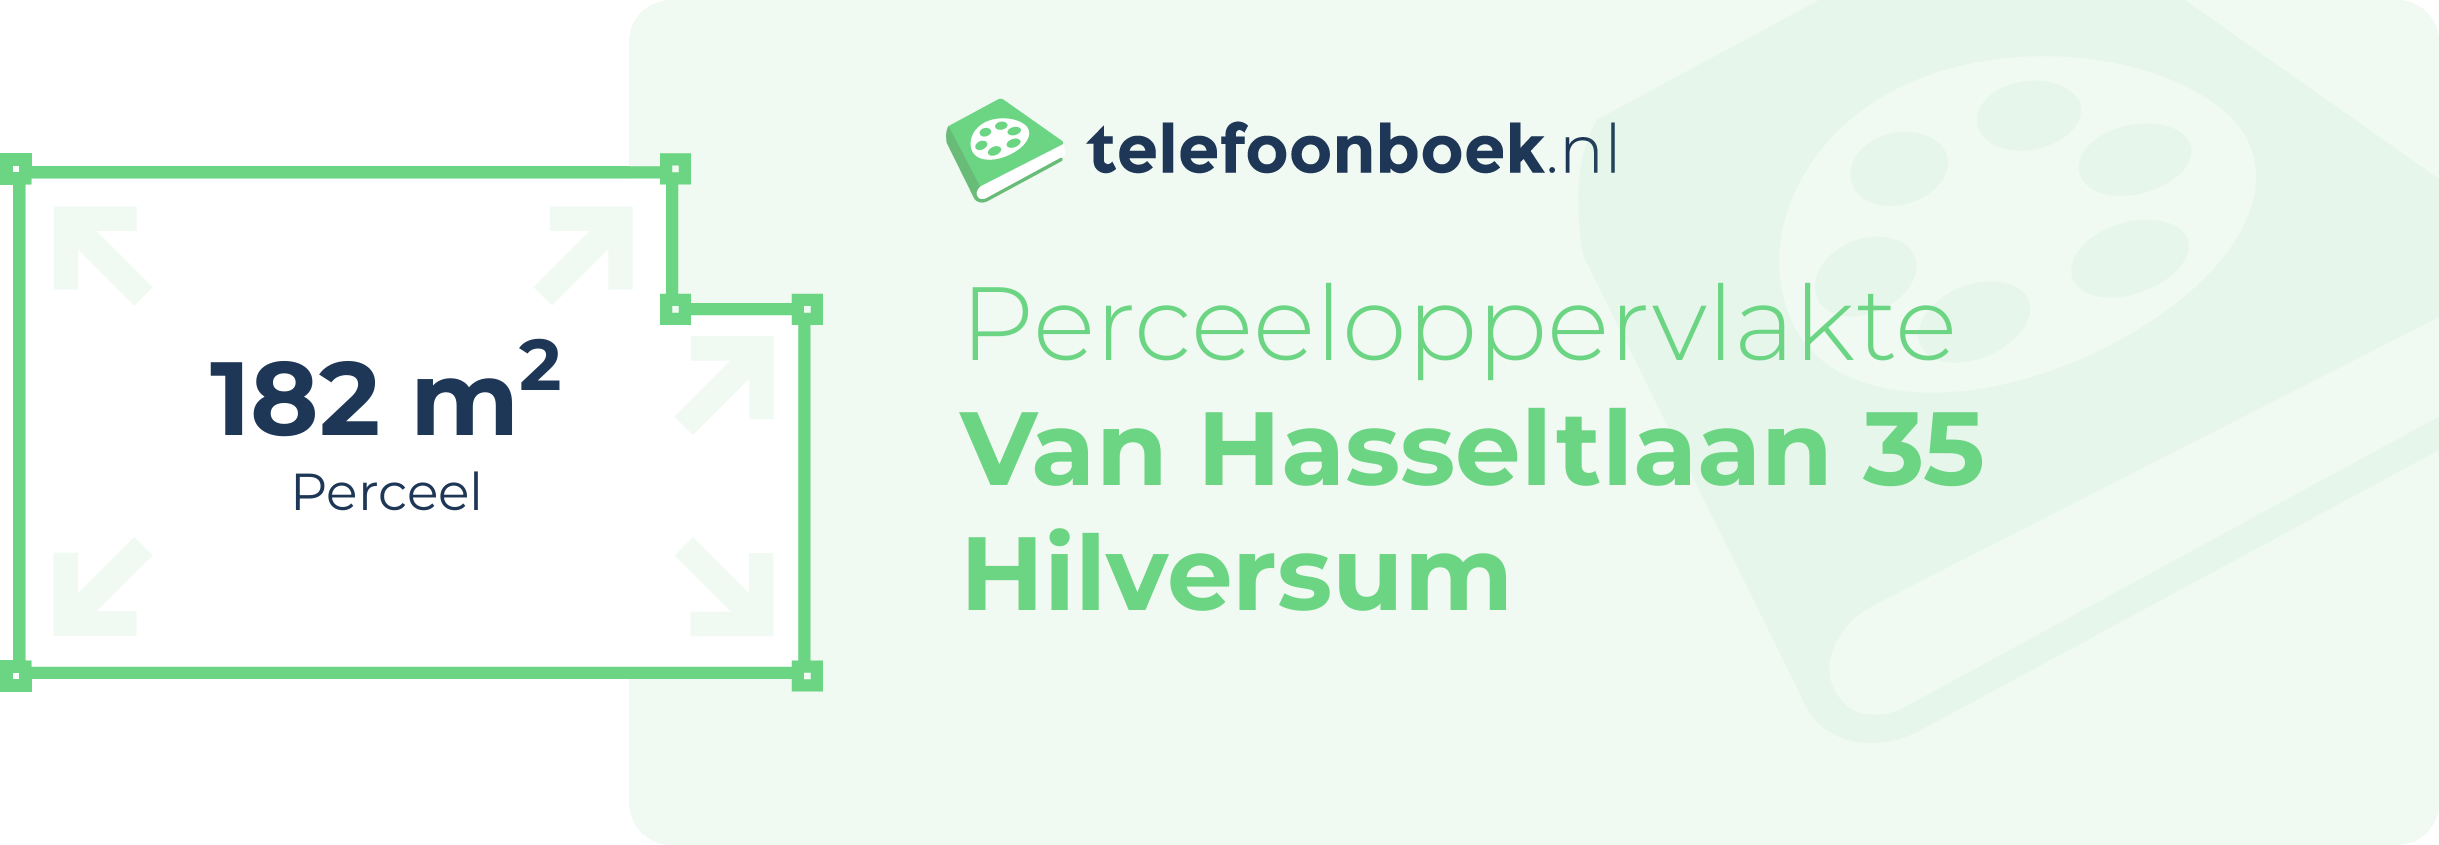 Perceeloppervlakte Van Hasseltlaan 35 Hilversum